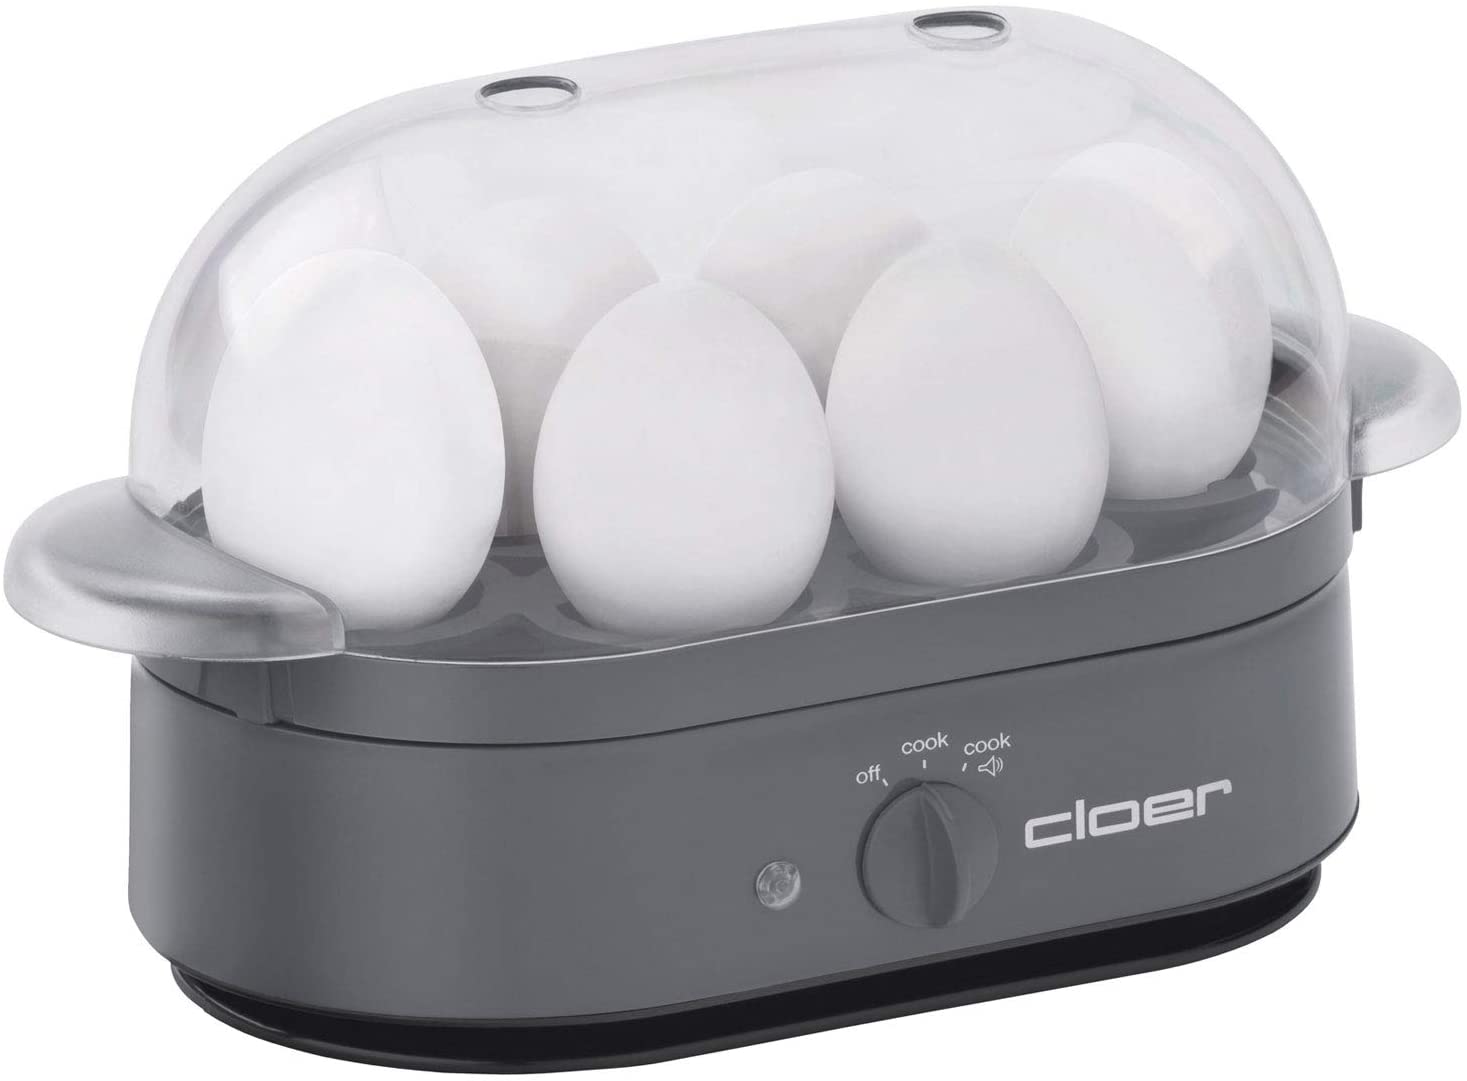 cloer 6095 6egg (S) 400 W Grey - Egg Utensil (230 mm, 110 mm, 135 mm, 700 g)